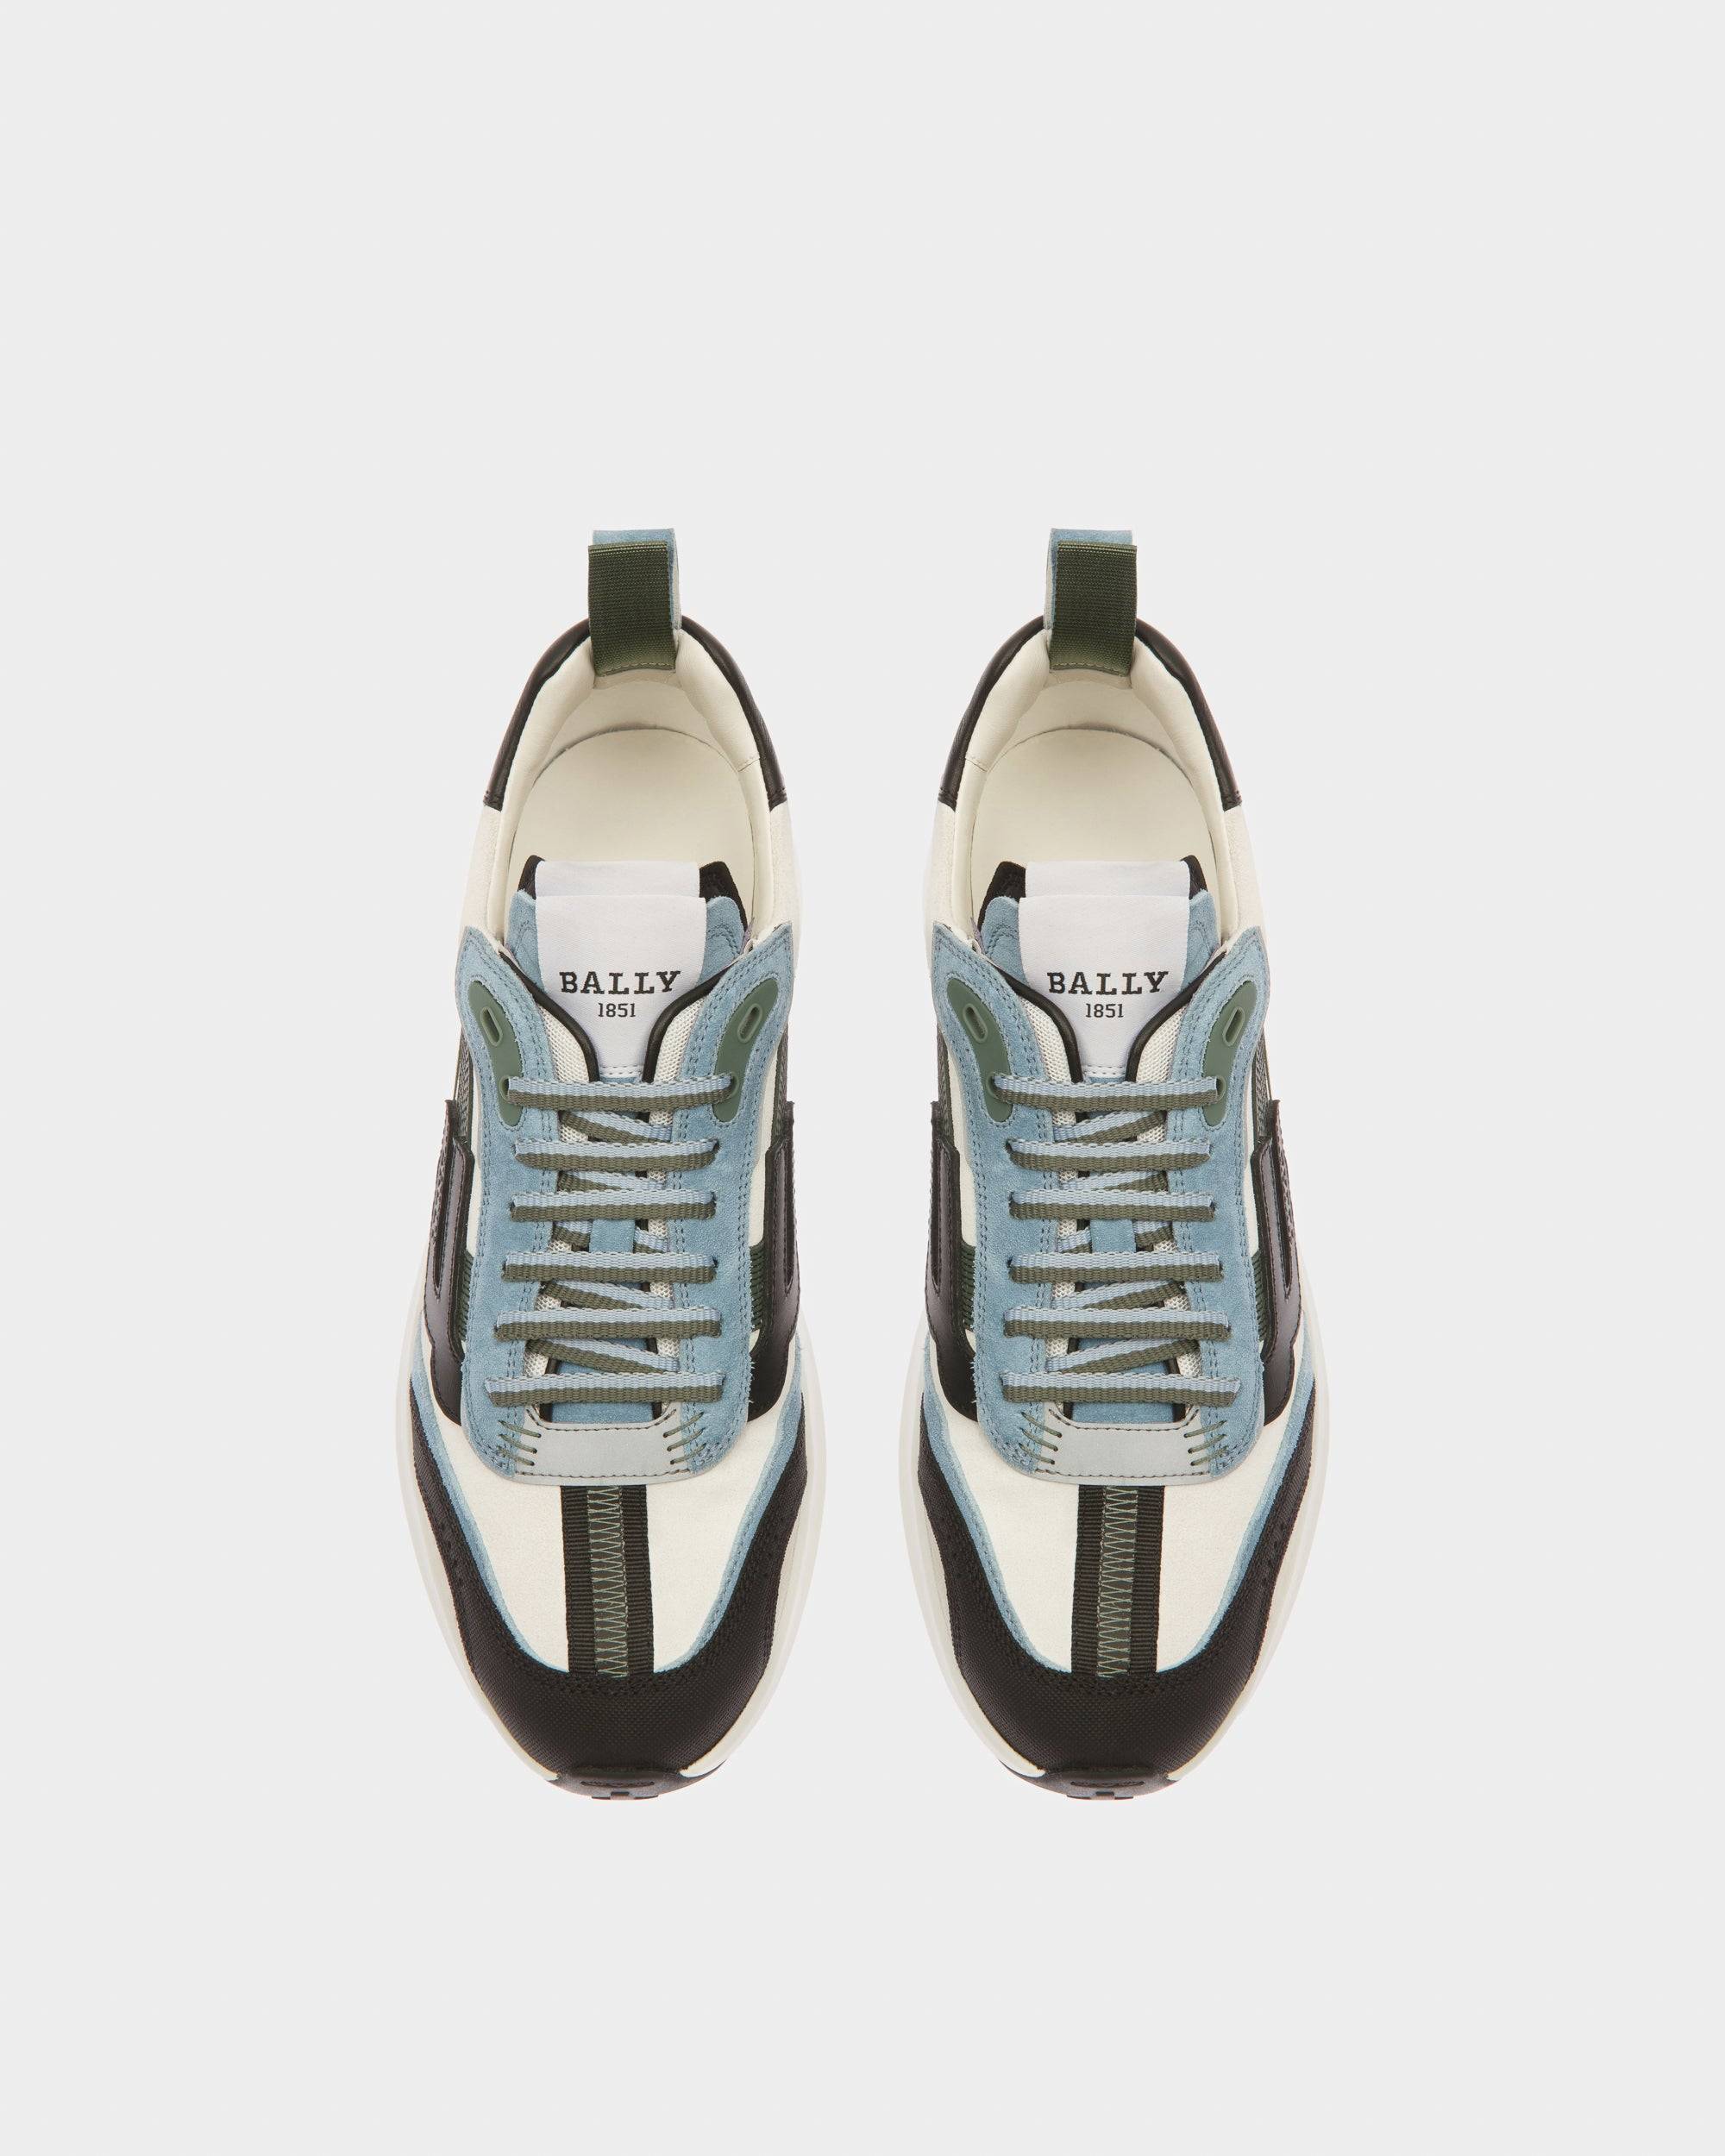 Darky Sneaker In Pelle Nera, Azzurra E Bianco Cipria - Bally - 02